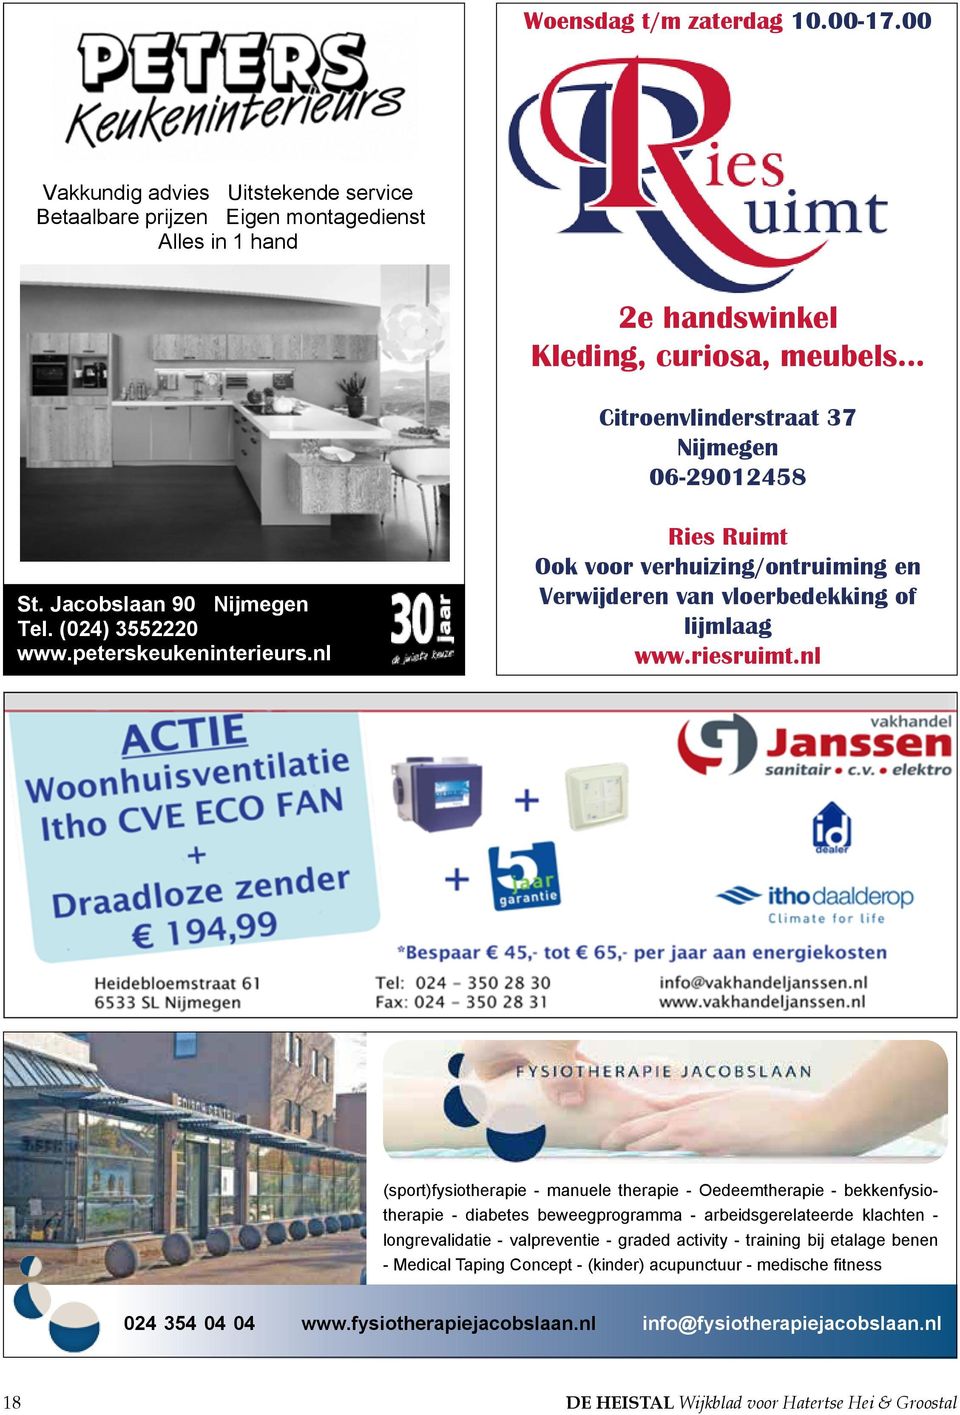 Jacobslaan 90 Nijmegen Tel. (024) 3552220 www.peterskeukeninterieurs.nl Ries Ruimt Ook voor verhuizing/ontruiming en Verwijderen van vloerbedekking of lijmlaag www.riesruimt.